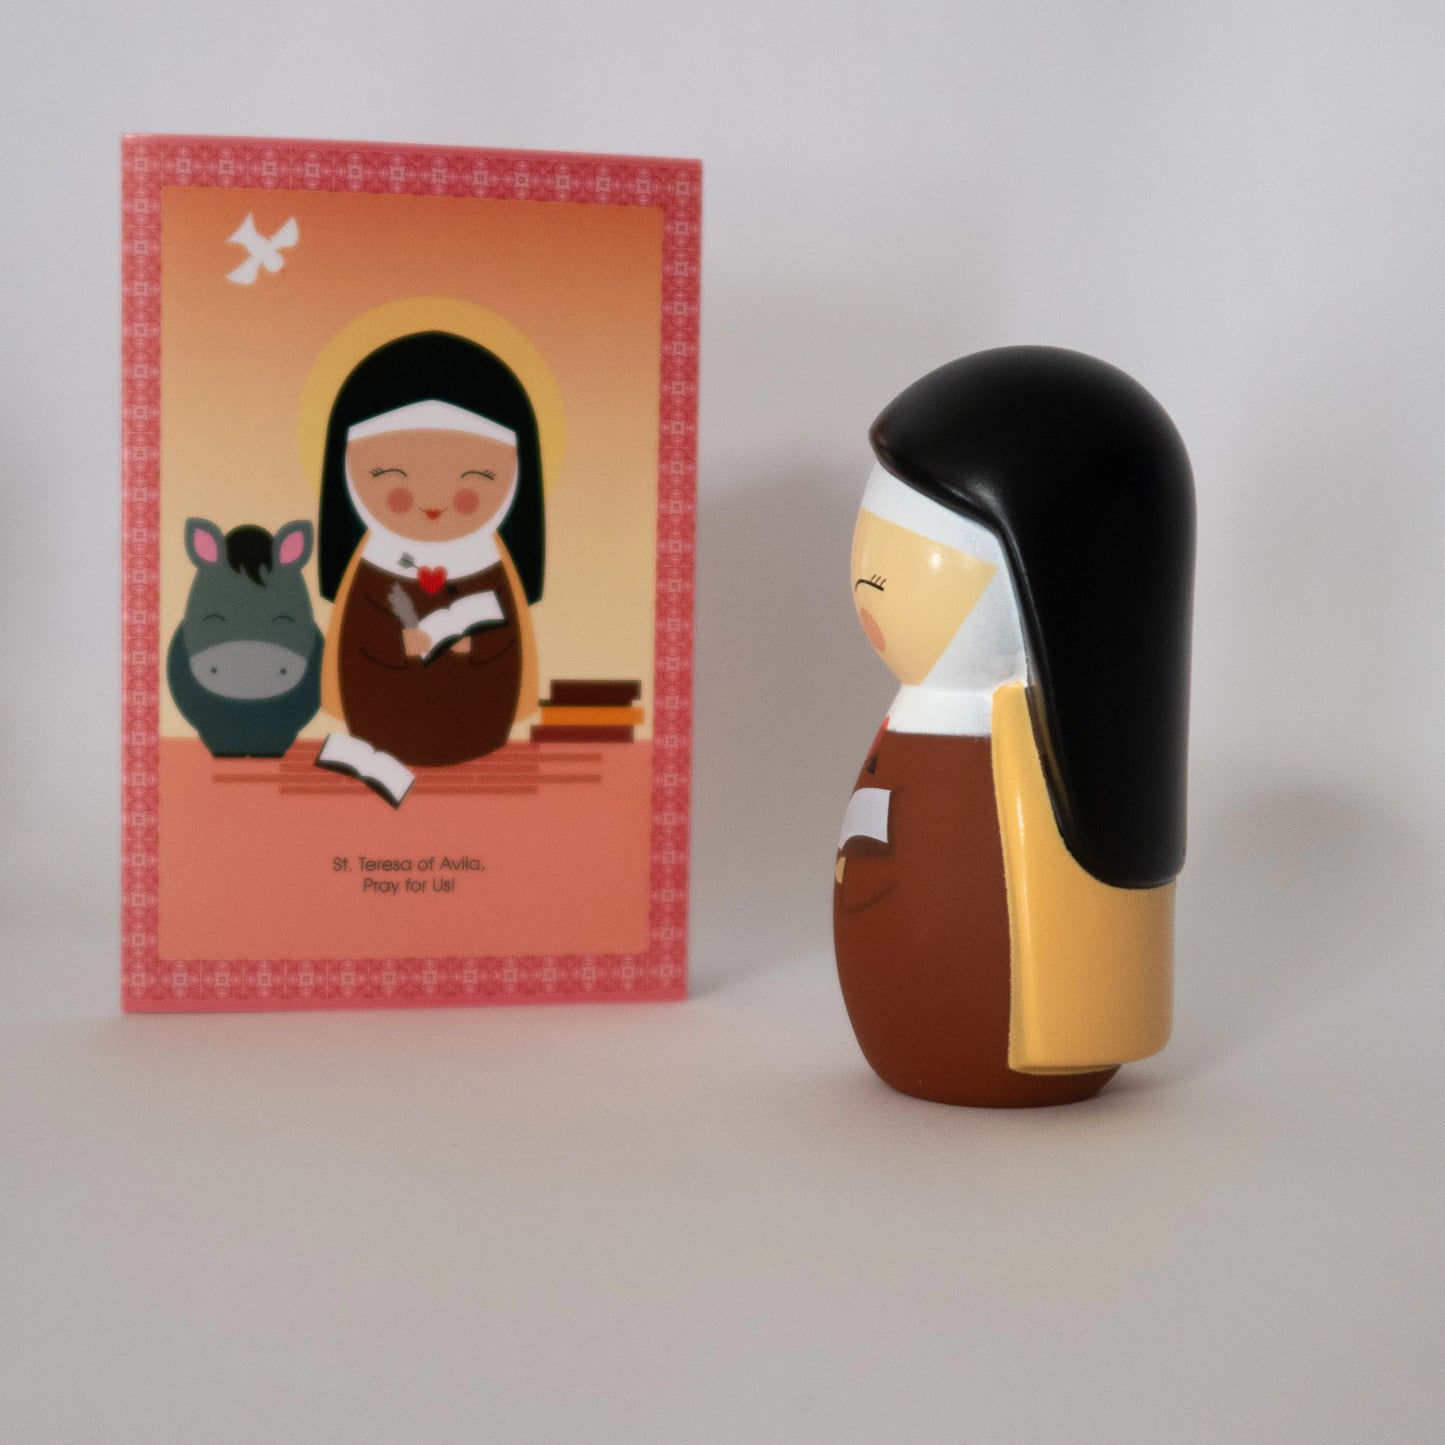 Saint Teresa of Avila Doll